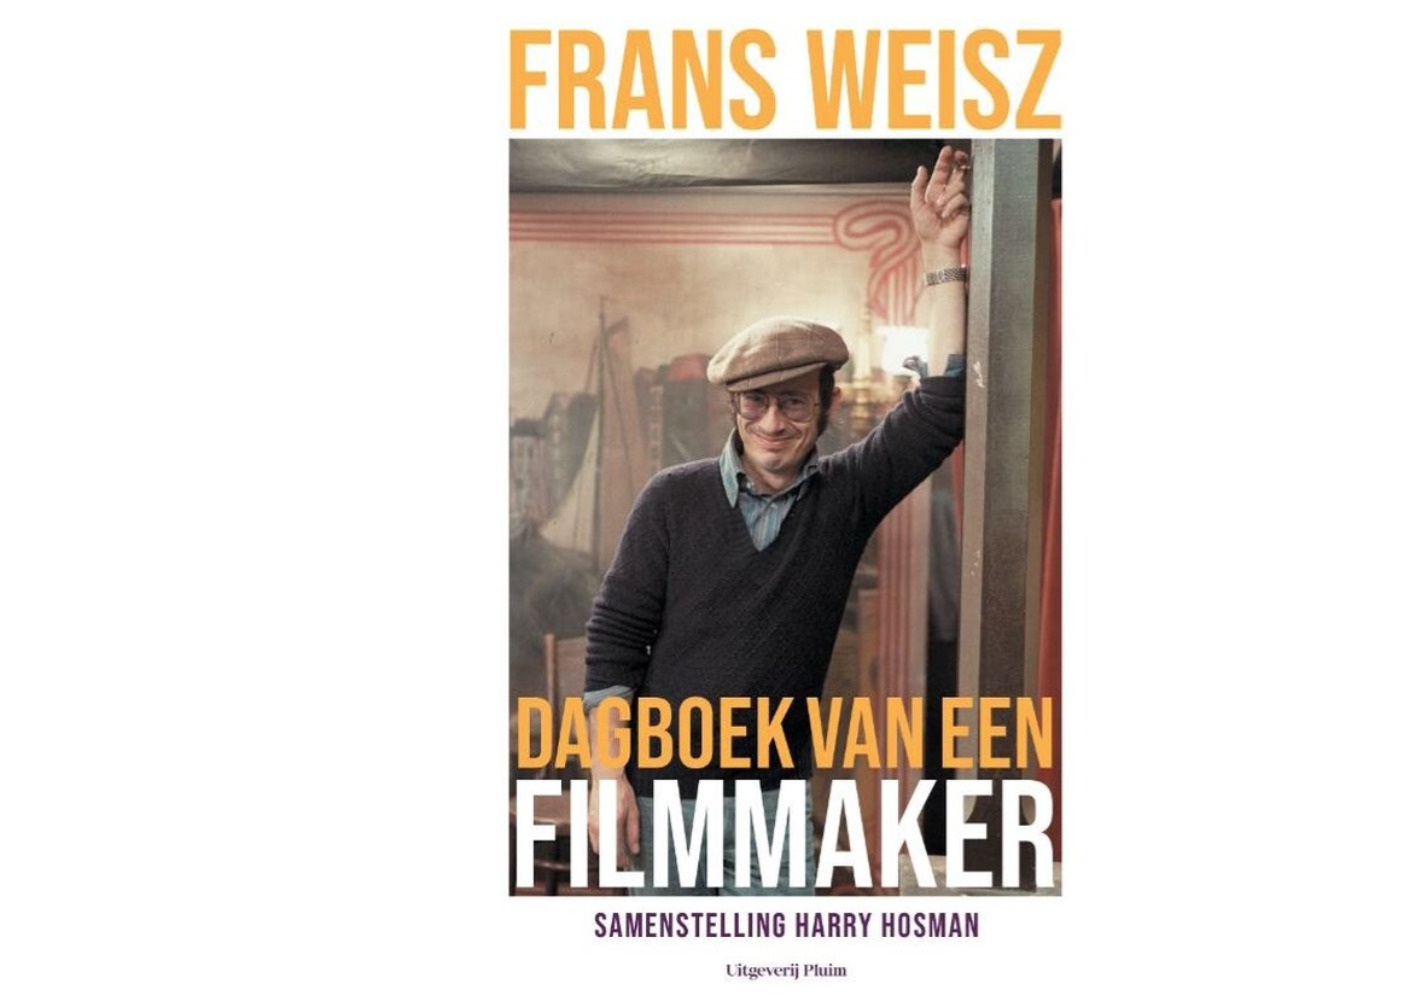 Dagboek van een filmmaker – recensie boek over Frans Weisz